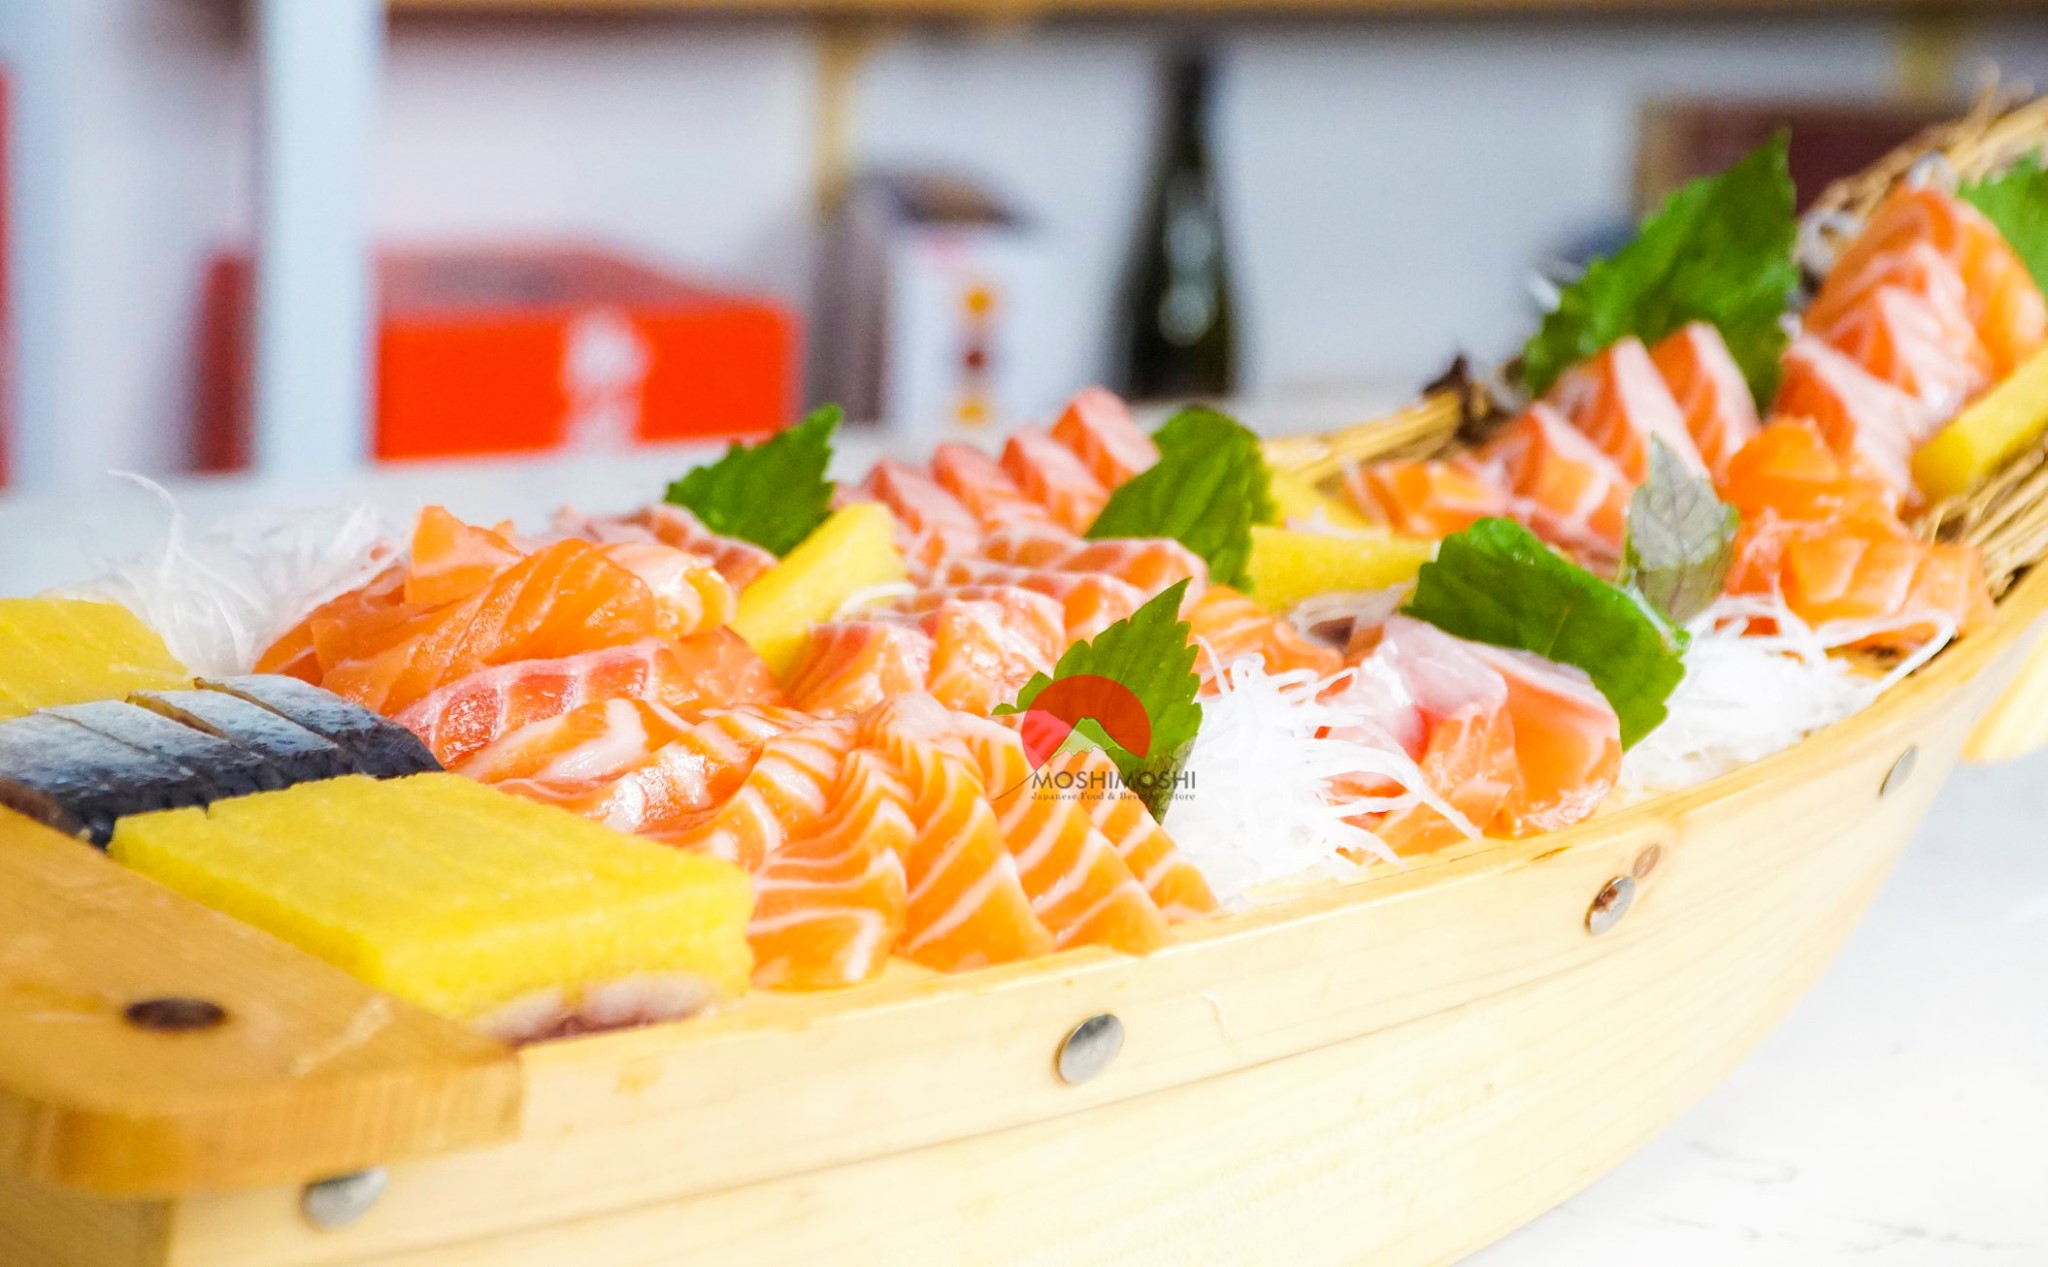 Điểm danh các món Sashimi cá sống, hải sản được yêu thích nhất.